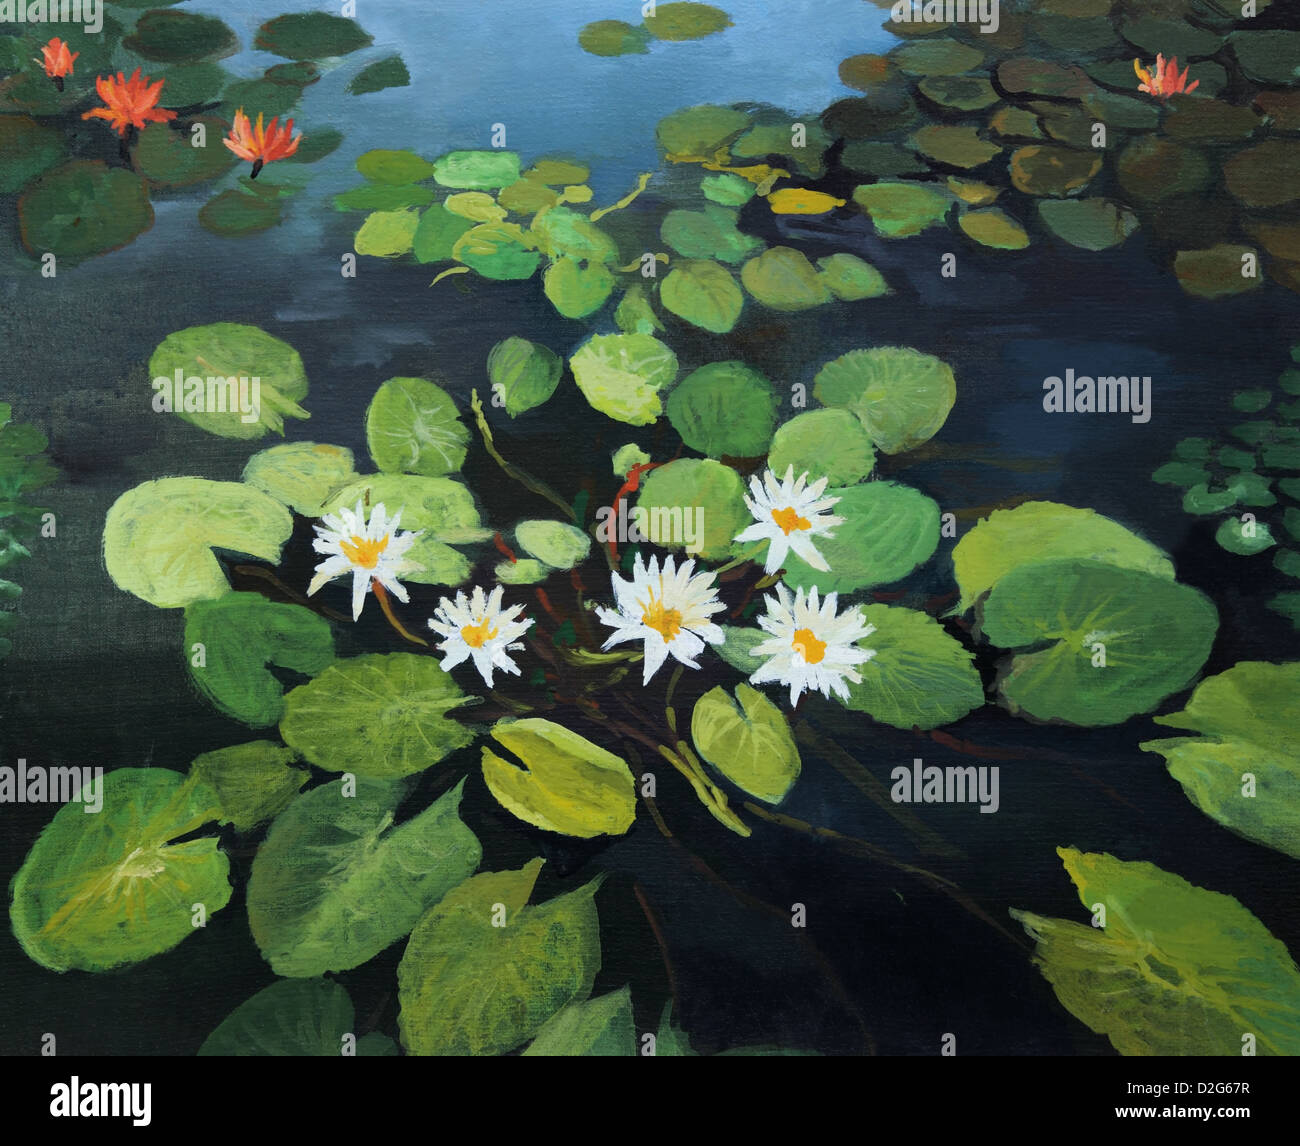 Un dipinto ad olio su tela di un laghetto colorato con splendide ninfee, fiori di loto e il cielo riflesso nell'acqua. Foto Stock